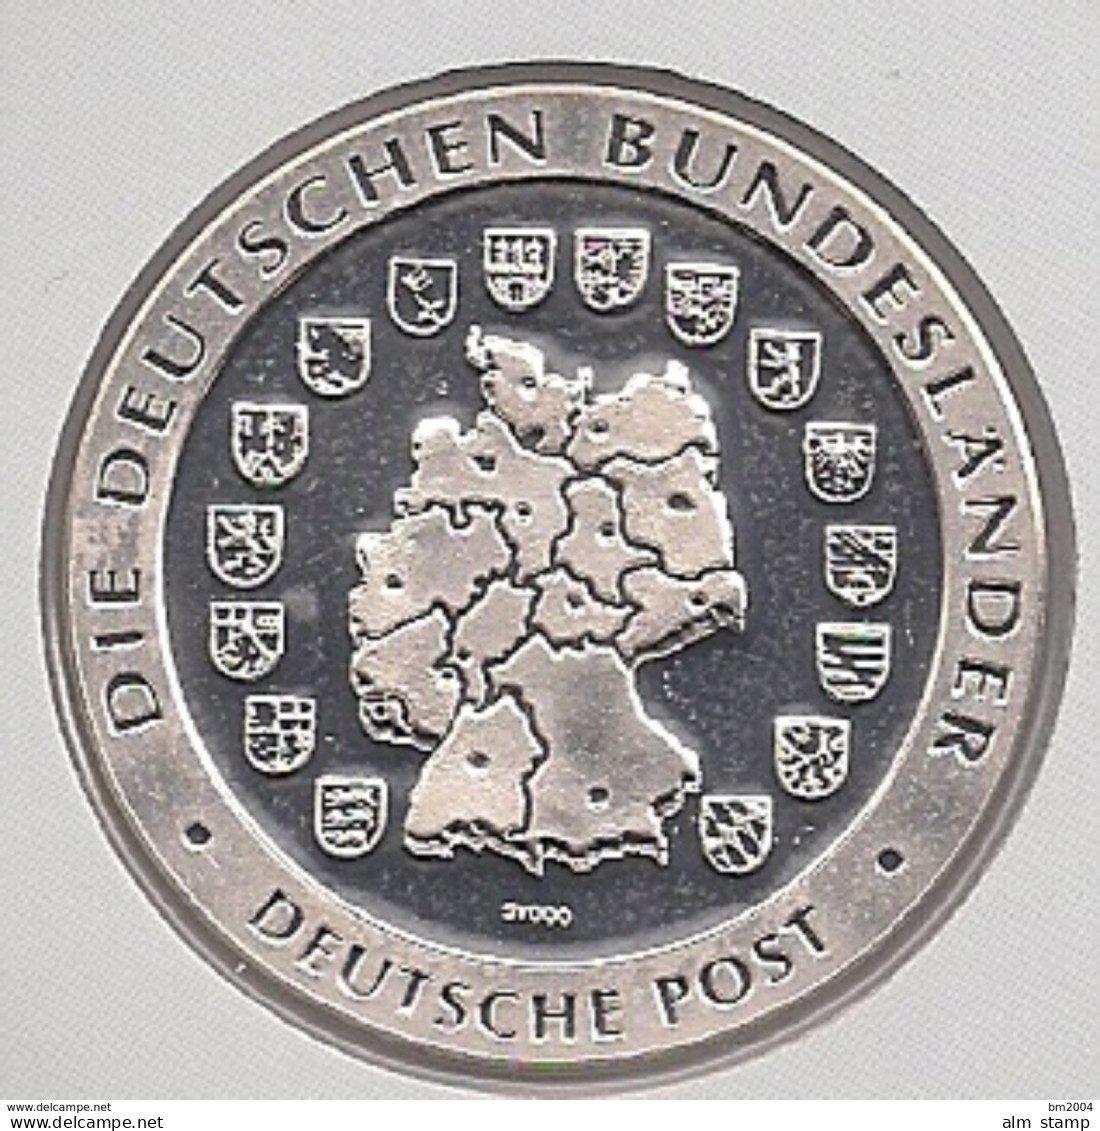 999/1000 Silber Medaille " Nordrhein-Westfalen  " PP   36 Mm DMR Rohgewicht : 14 G Prägung : Hochrelief - Pièces écrasées (Elongated Coins)